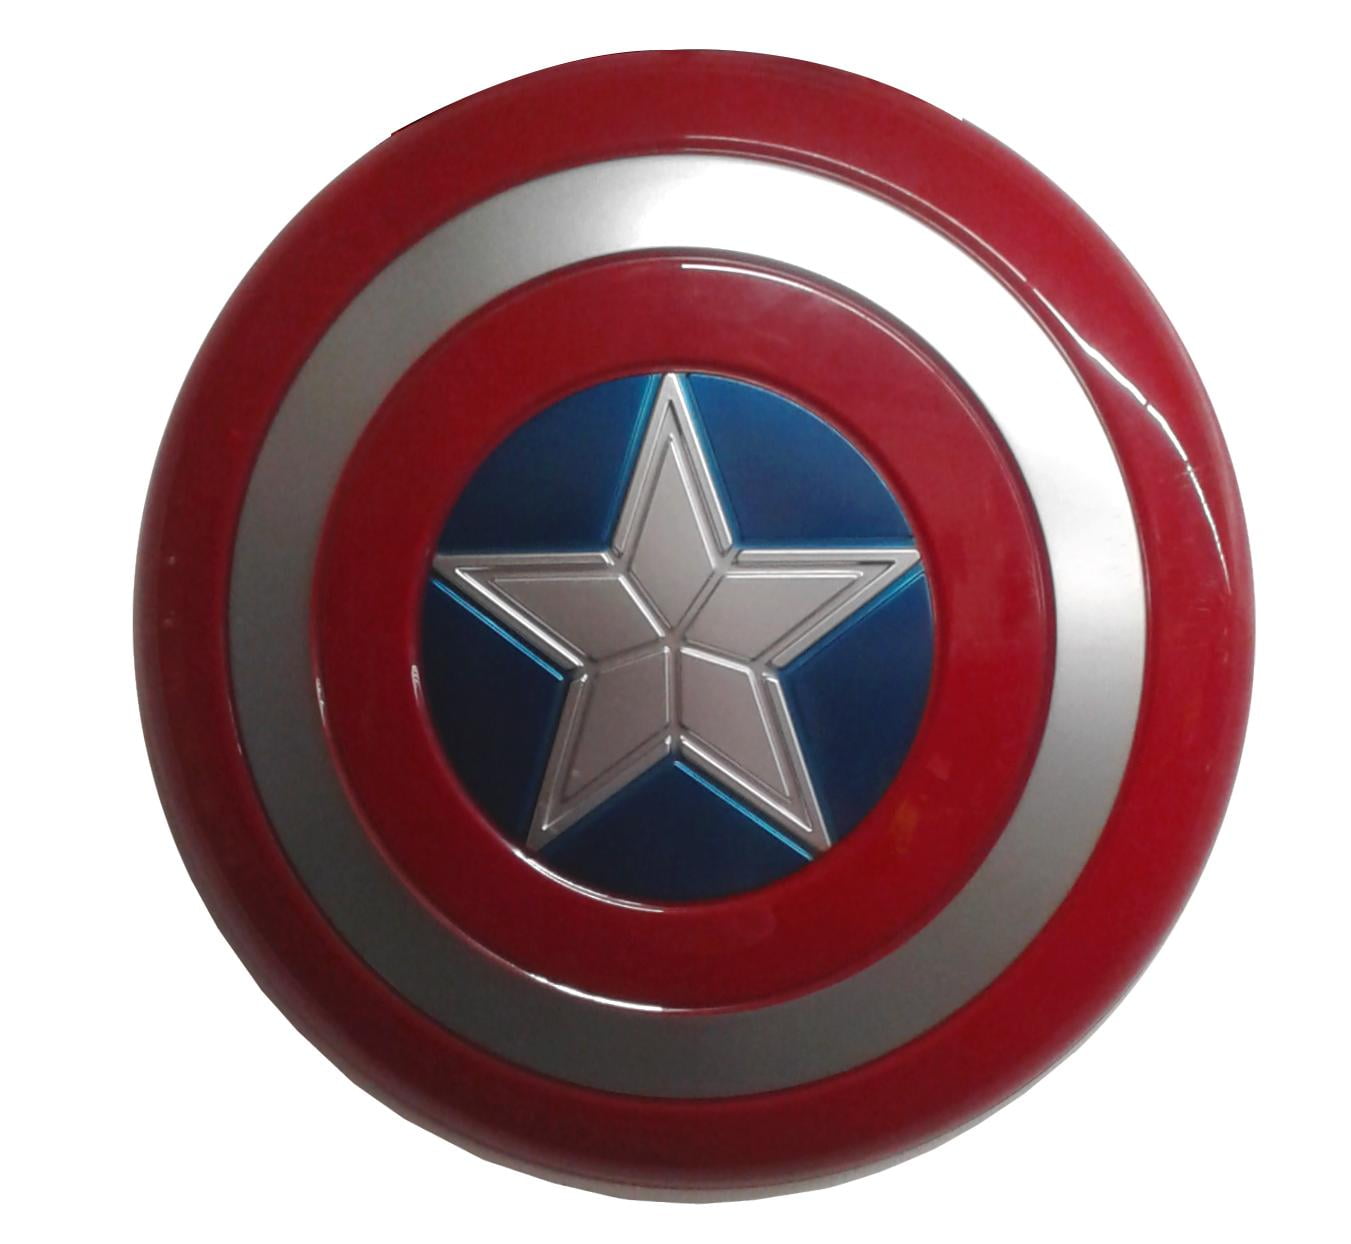 18.7in Full Size Metal Captain America Shield Superhero Cosplay Party Props 1:1 Adult Version Escudo Del Capitan America Replica 